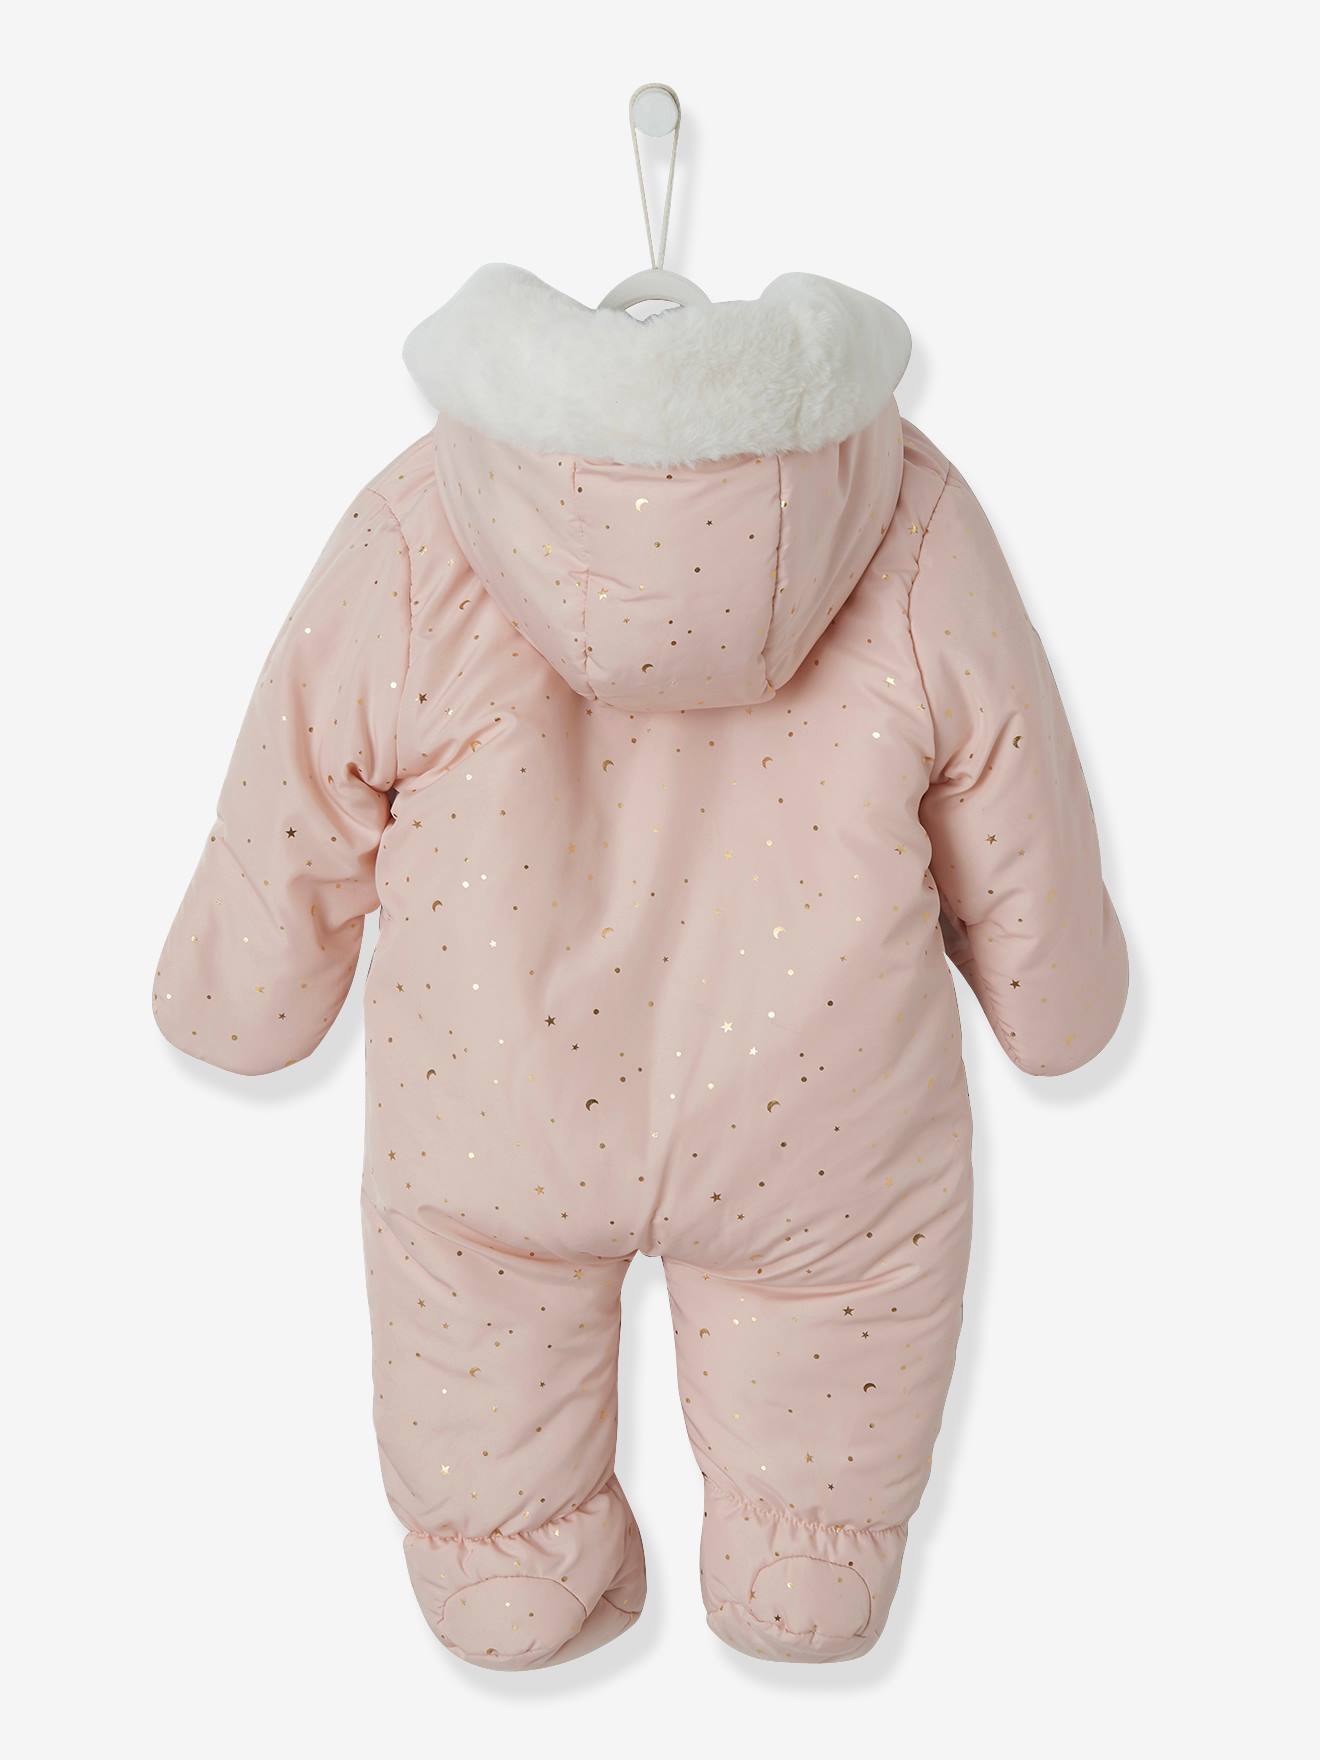 newborn baby pram suit